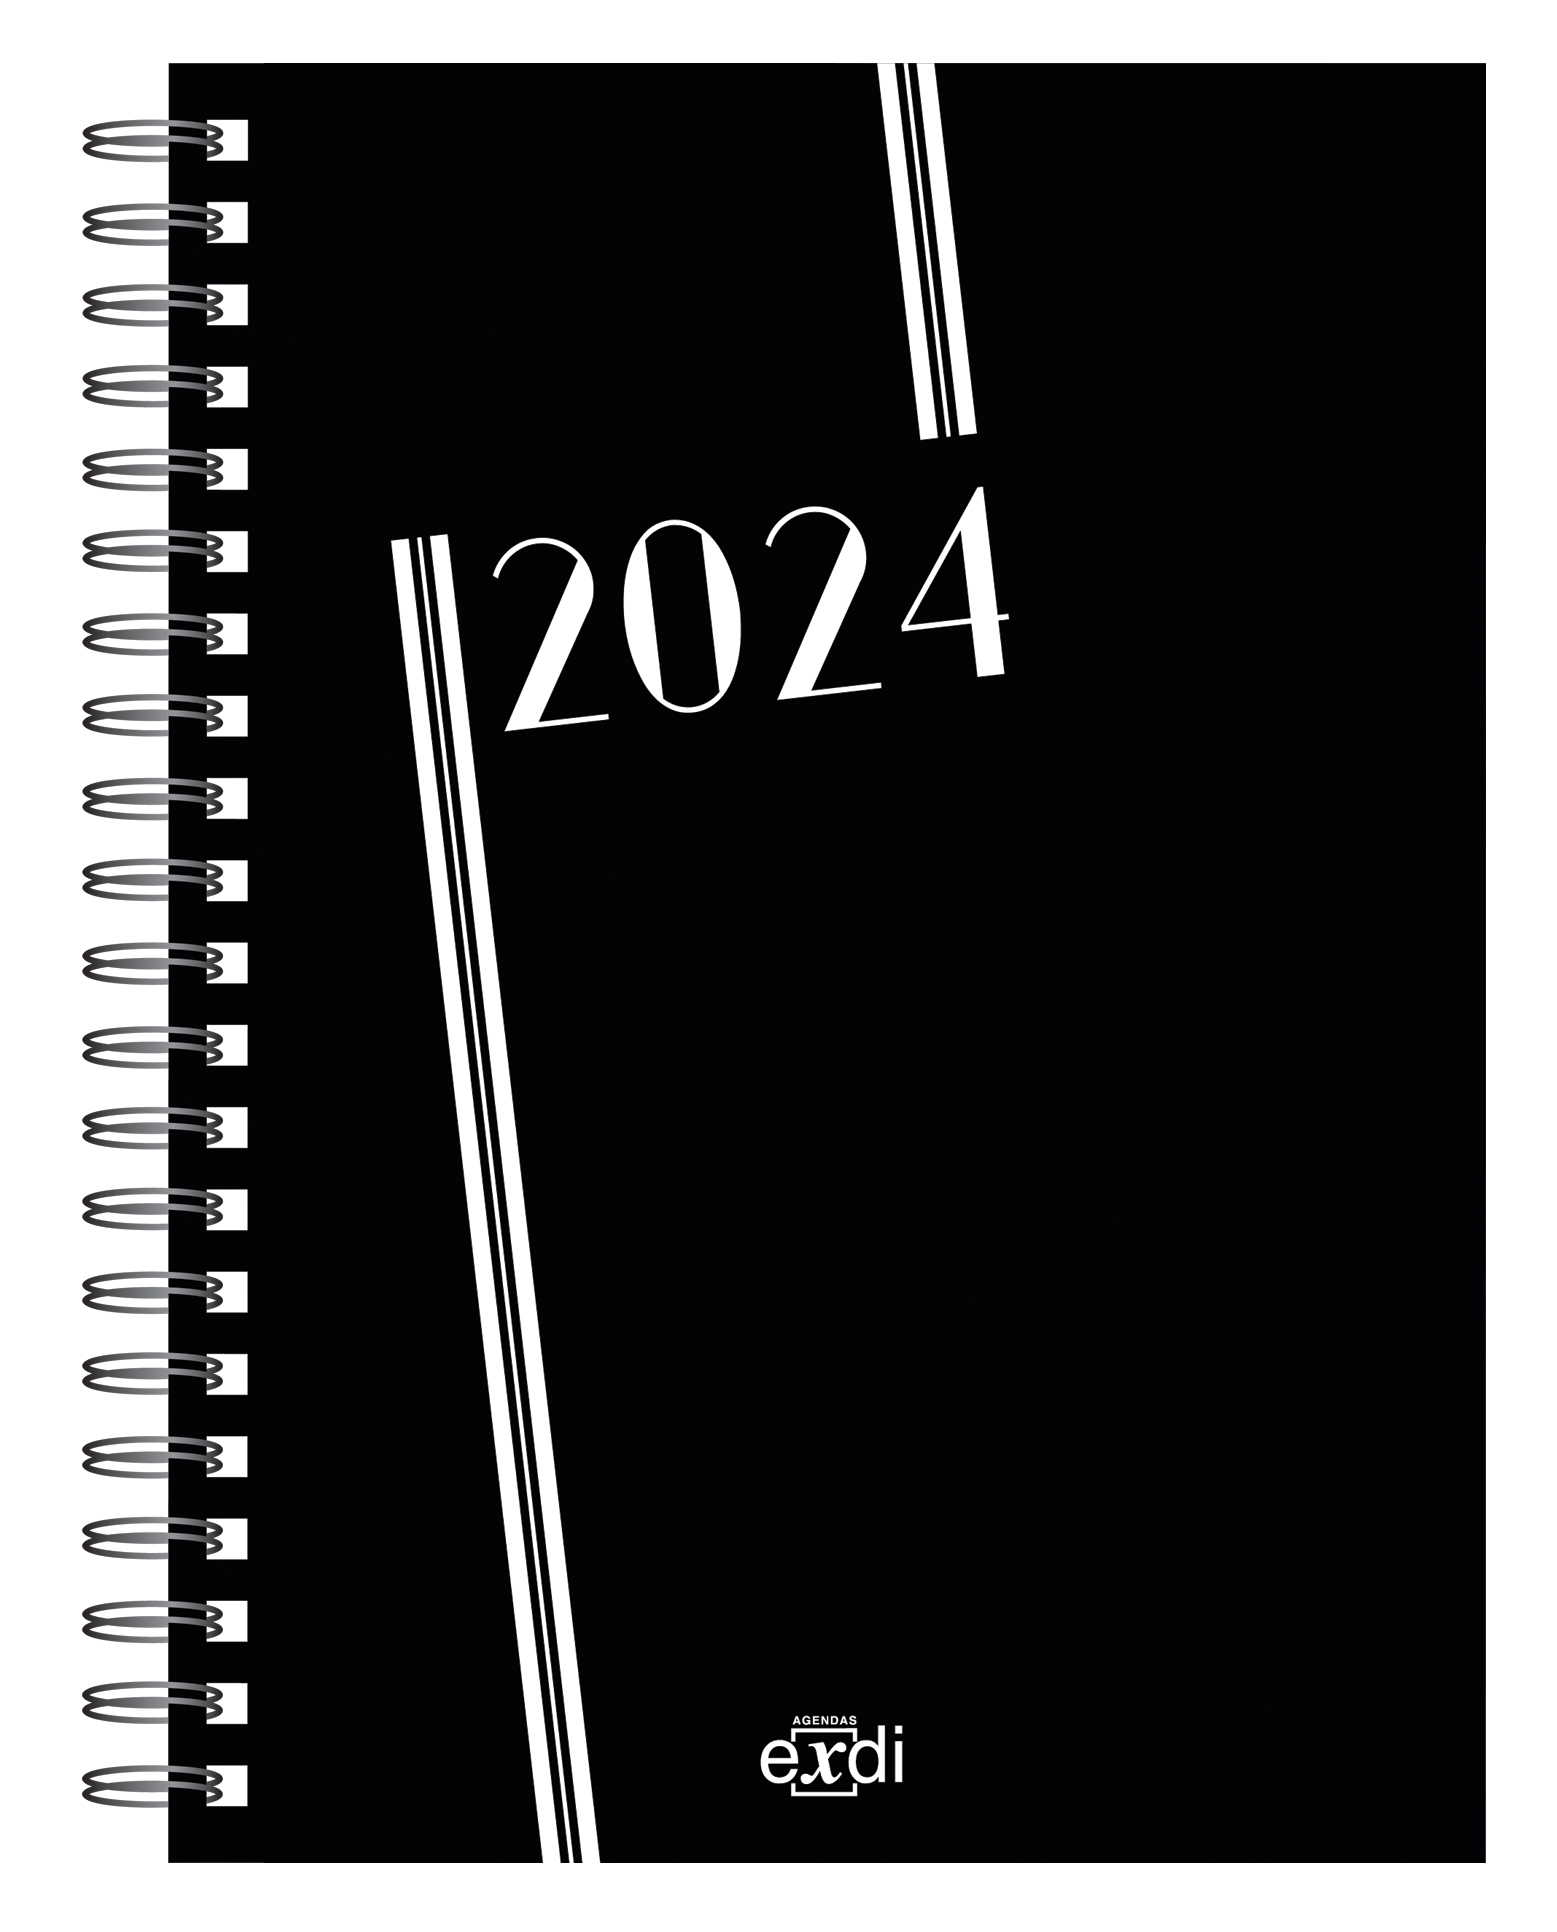 Agendas Exacompta 2024 - Modèle Journal 29 en vente à Lyon - Papeterie  Gouchon